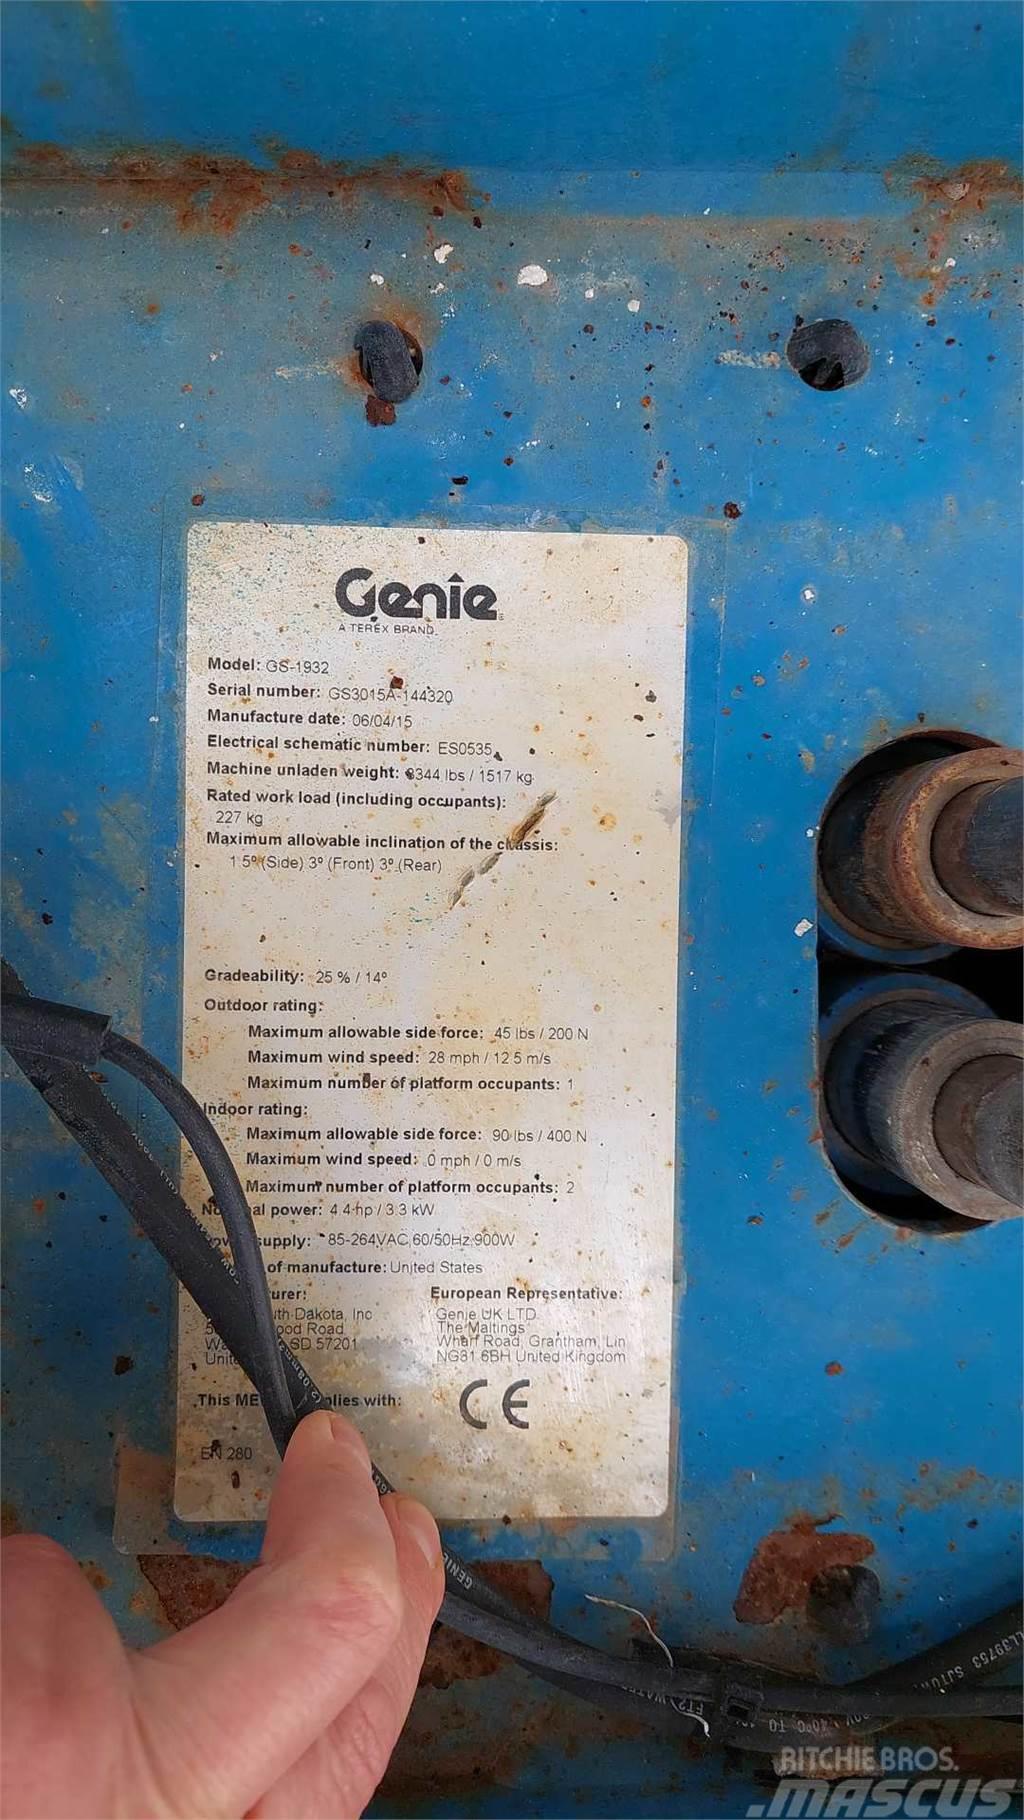 Genie GS1932 Saxlifte